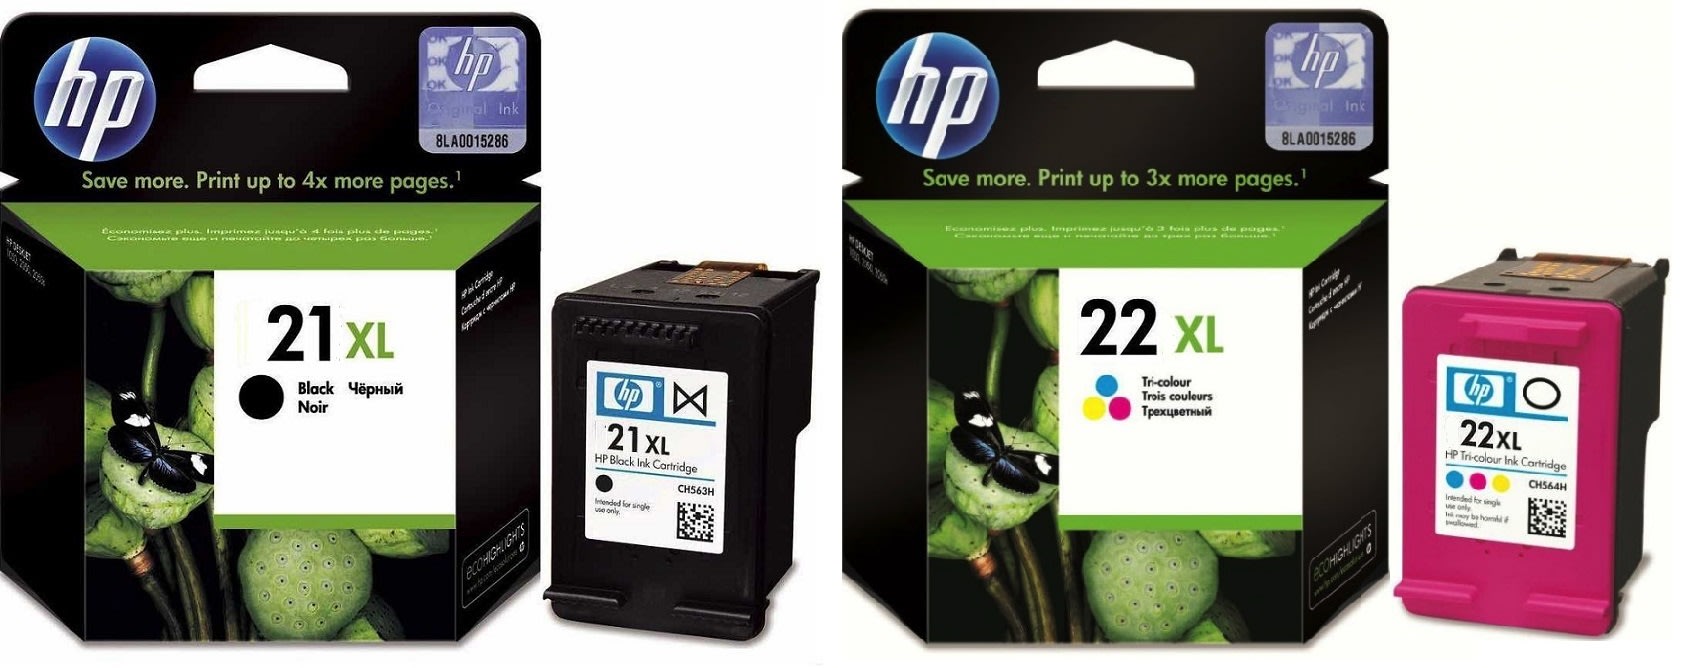 Картриджи hp 21XL 22XL для HP Deskjet 3920. Купить комплект оригинальных чернил.